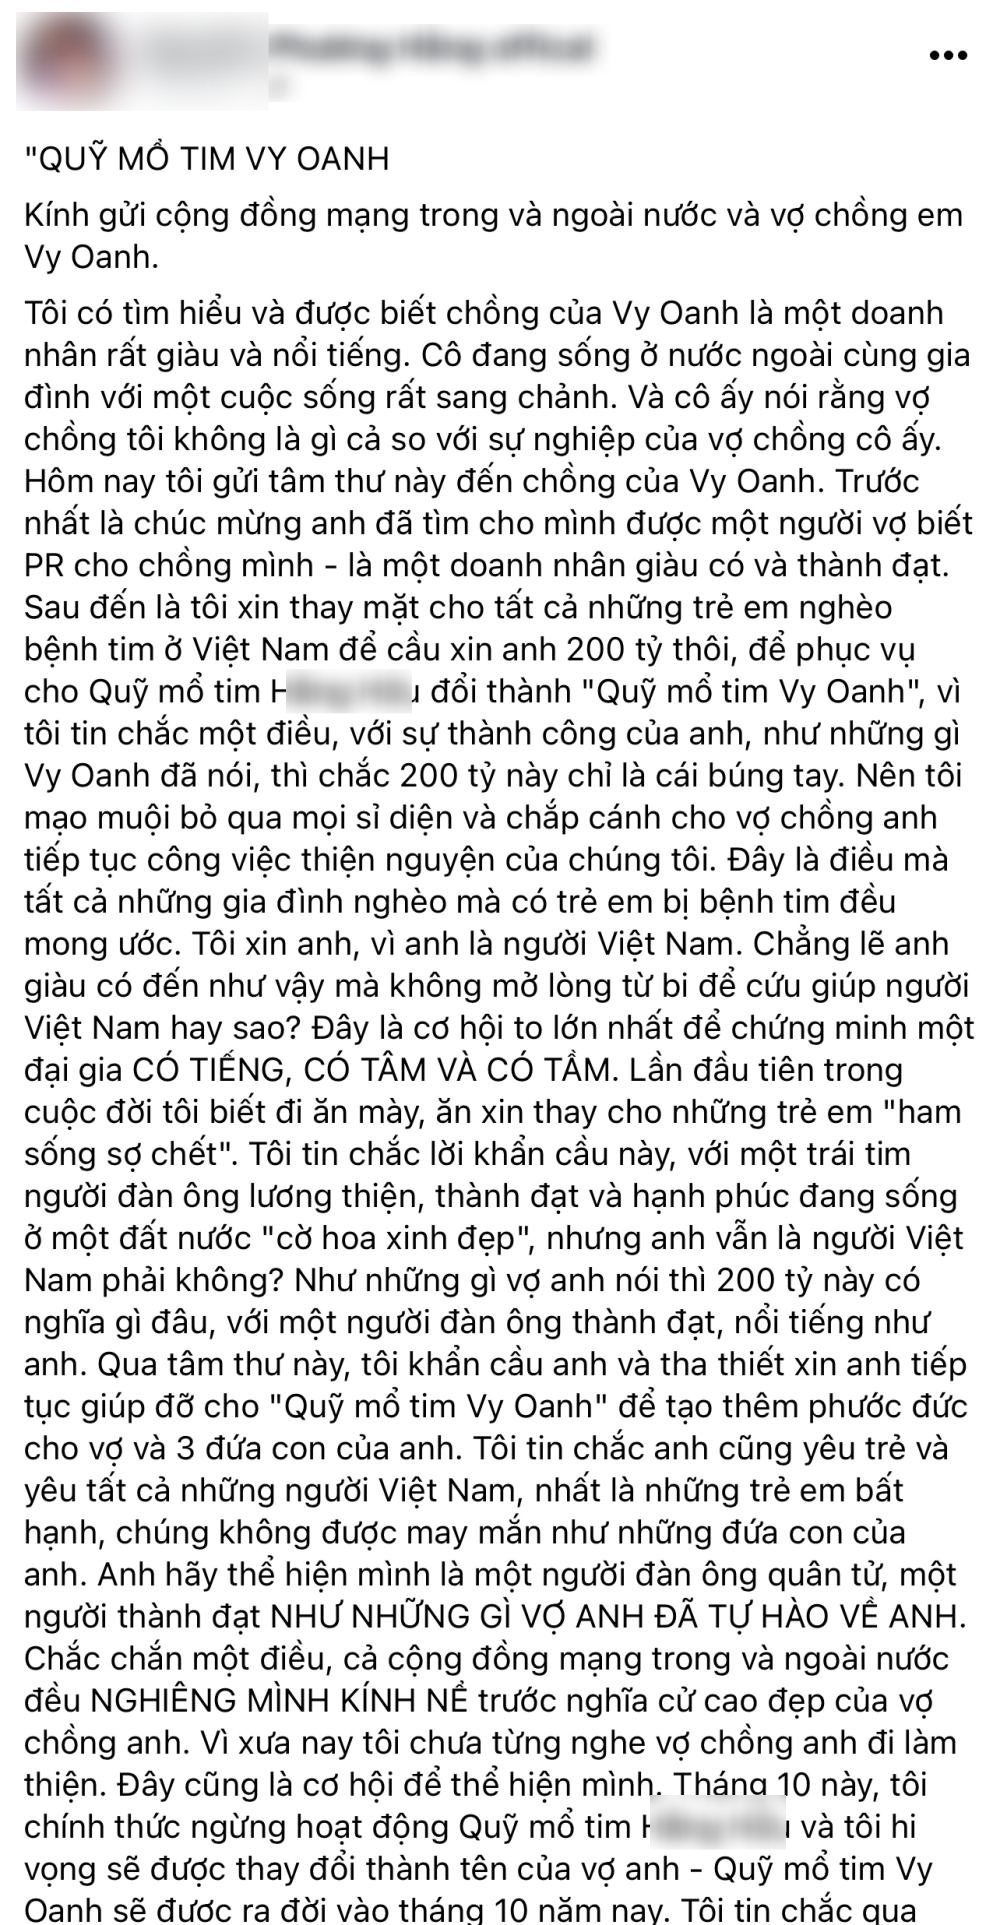  
Nữ CEO viết tâm thư gửi Vy Oanh xin 200 tỷ vào quỹ mổ tim. (Ảnh: Chụp màn hình) - Tin sao Viet - Tin tuc sao Viet - Scandal sao Viet - Tin tuc cua Sao - Tin cua Sao